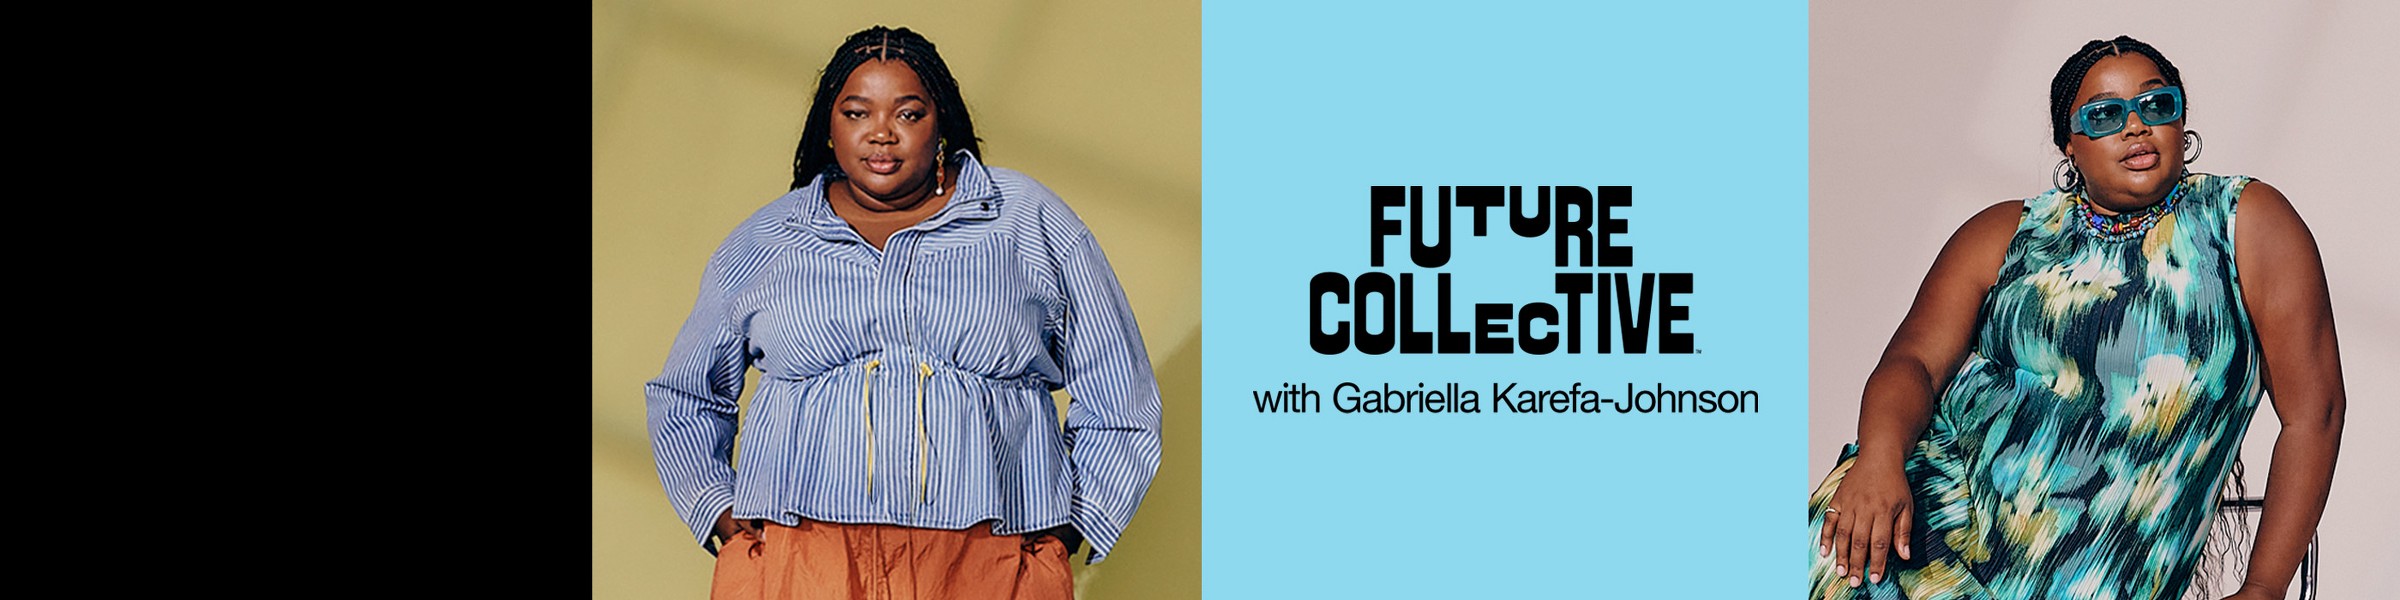 Future Collective™ with Gabriella Karefa-Johnson